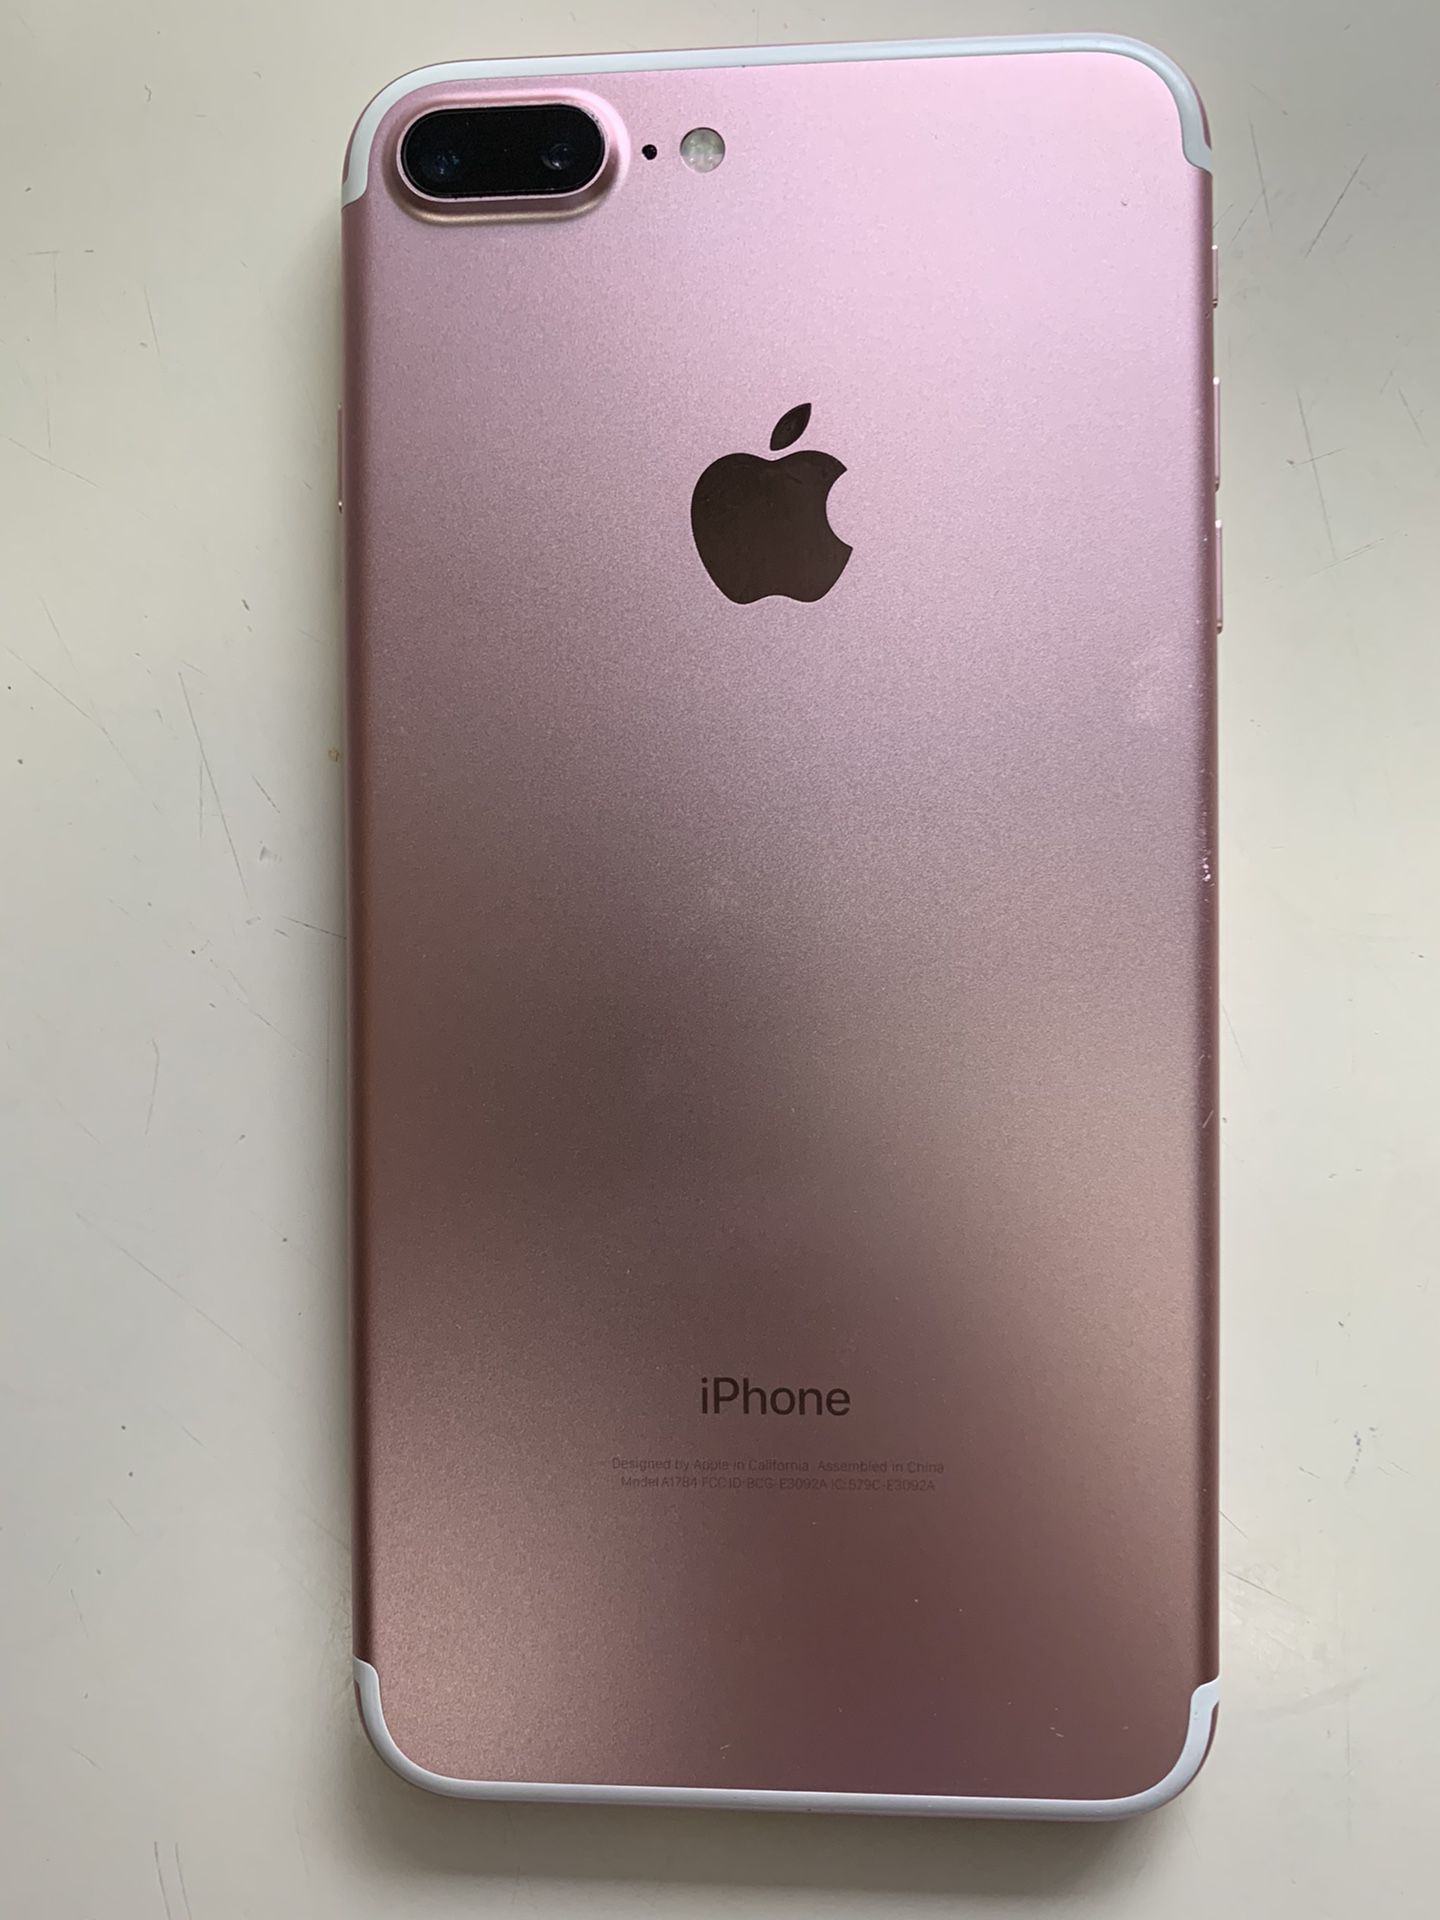 Iphone 7 Plus, 128g, rose gold